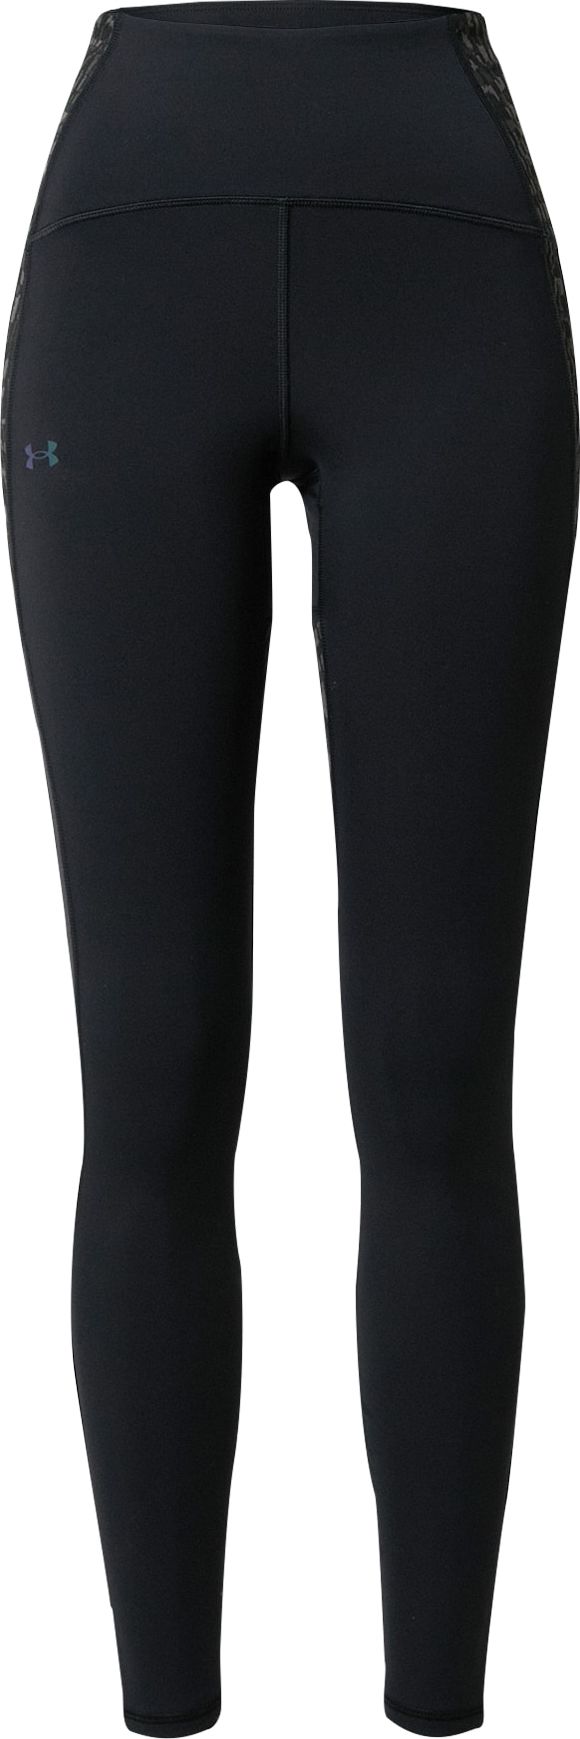 UNDER ARMOUR Sportovní kalhoty 'Novelty' černá / šedá / tmavě šedá